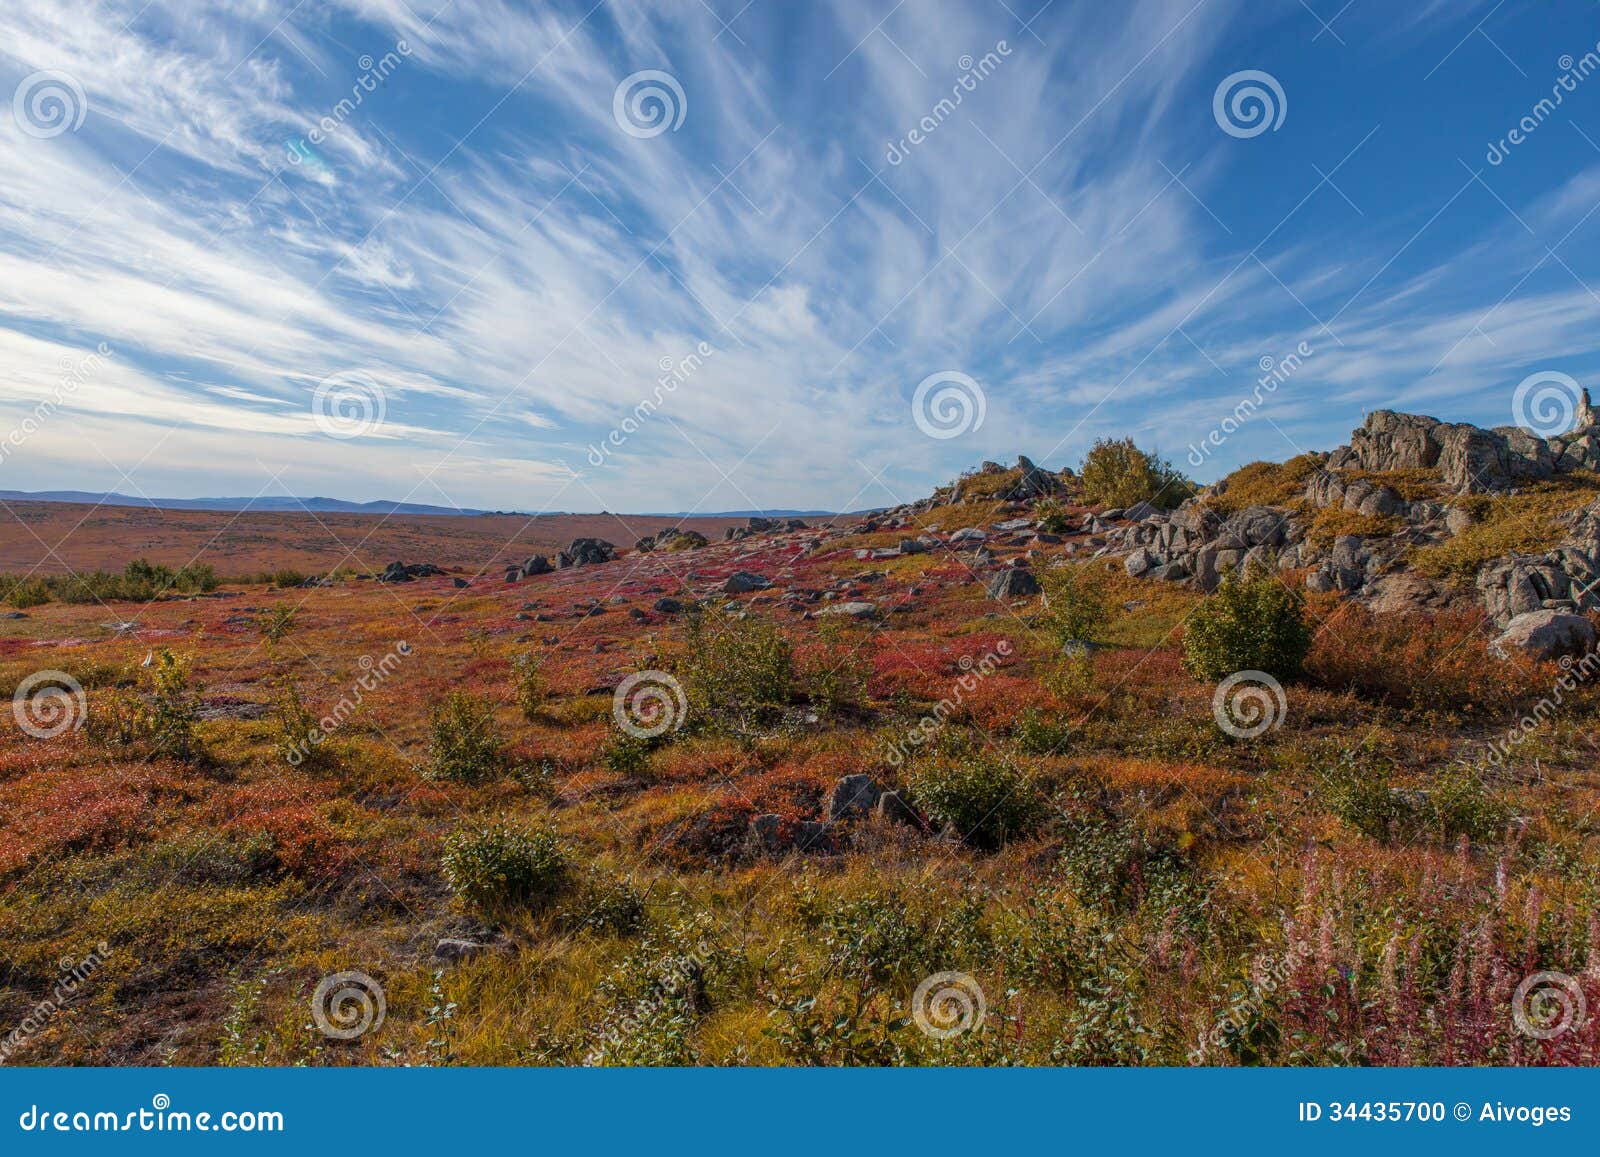 yukon arctic tundra in fall colors